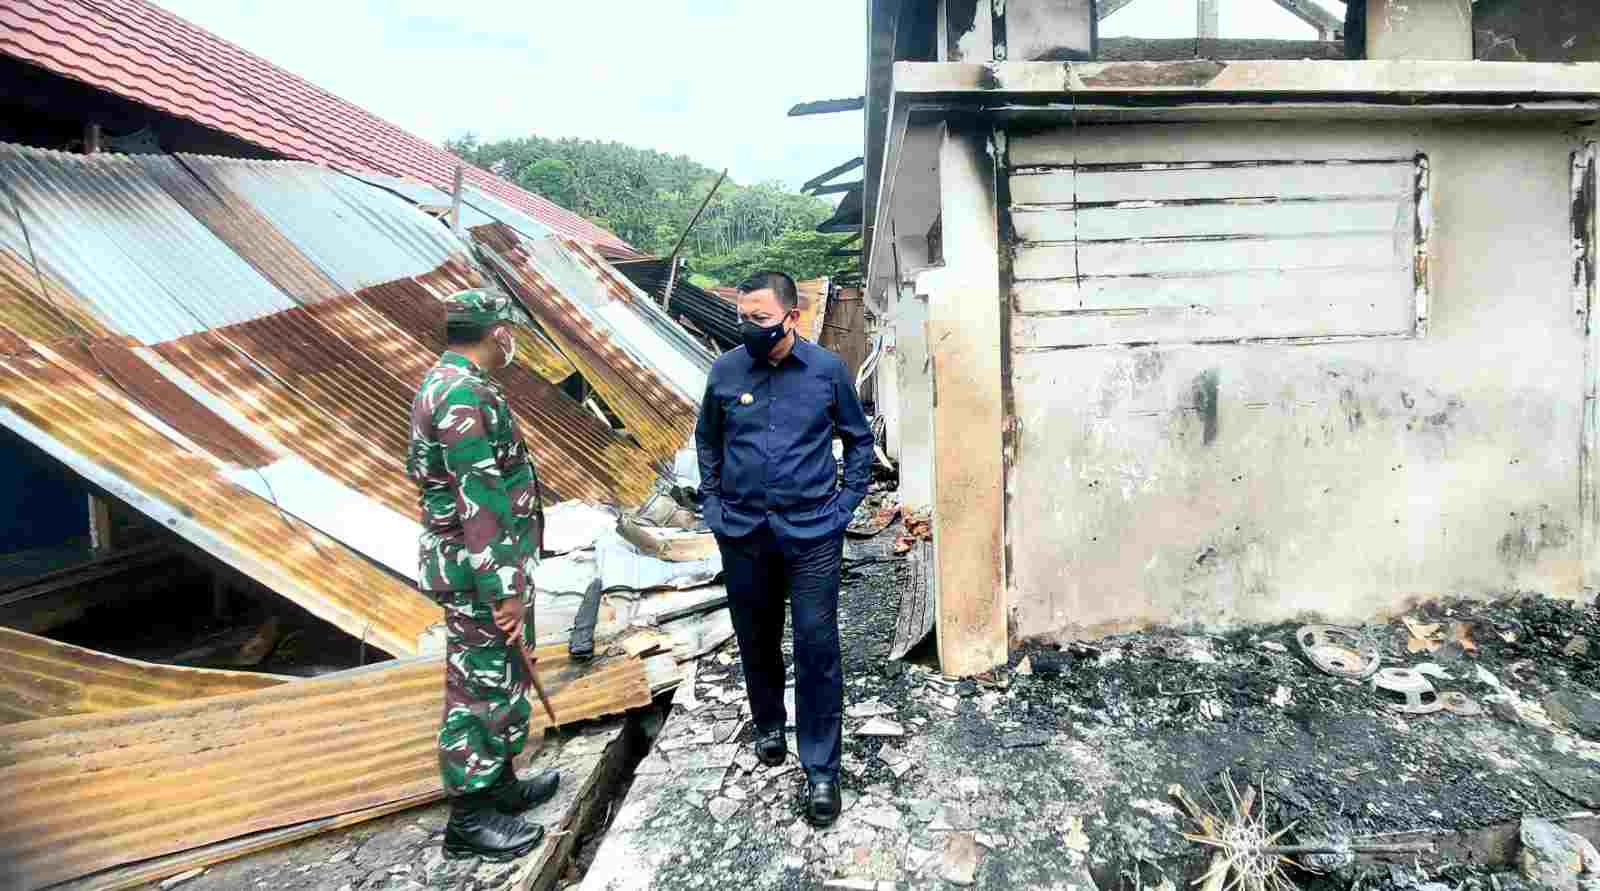 Basli Ali Tinjau Langsung Lokasi Kebakaran Pasar Rakyat Bonea Benteng